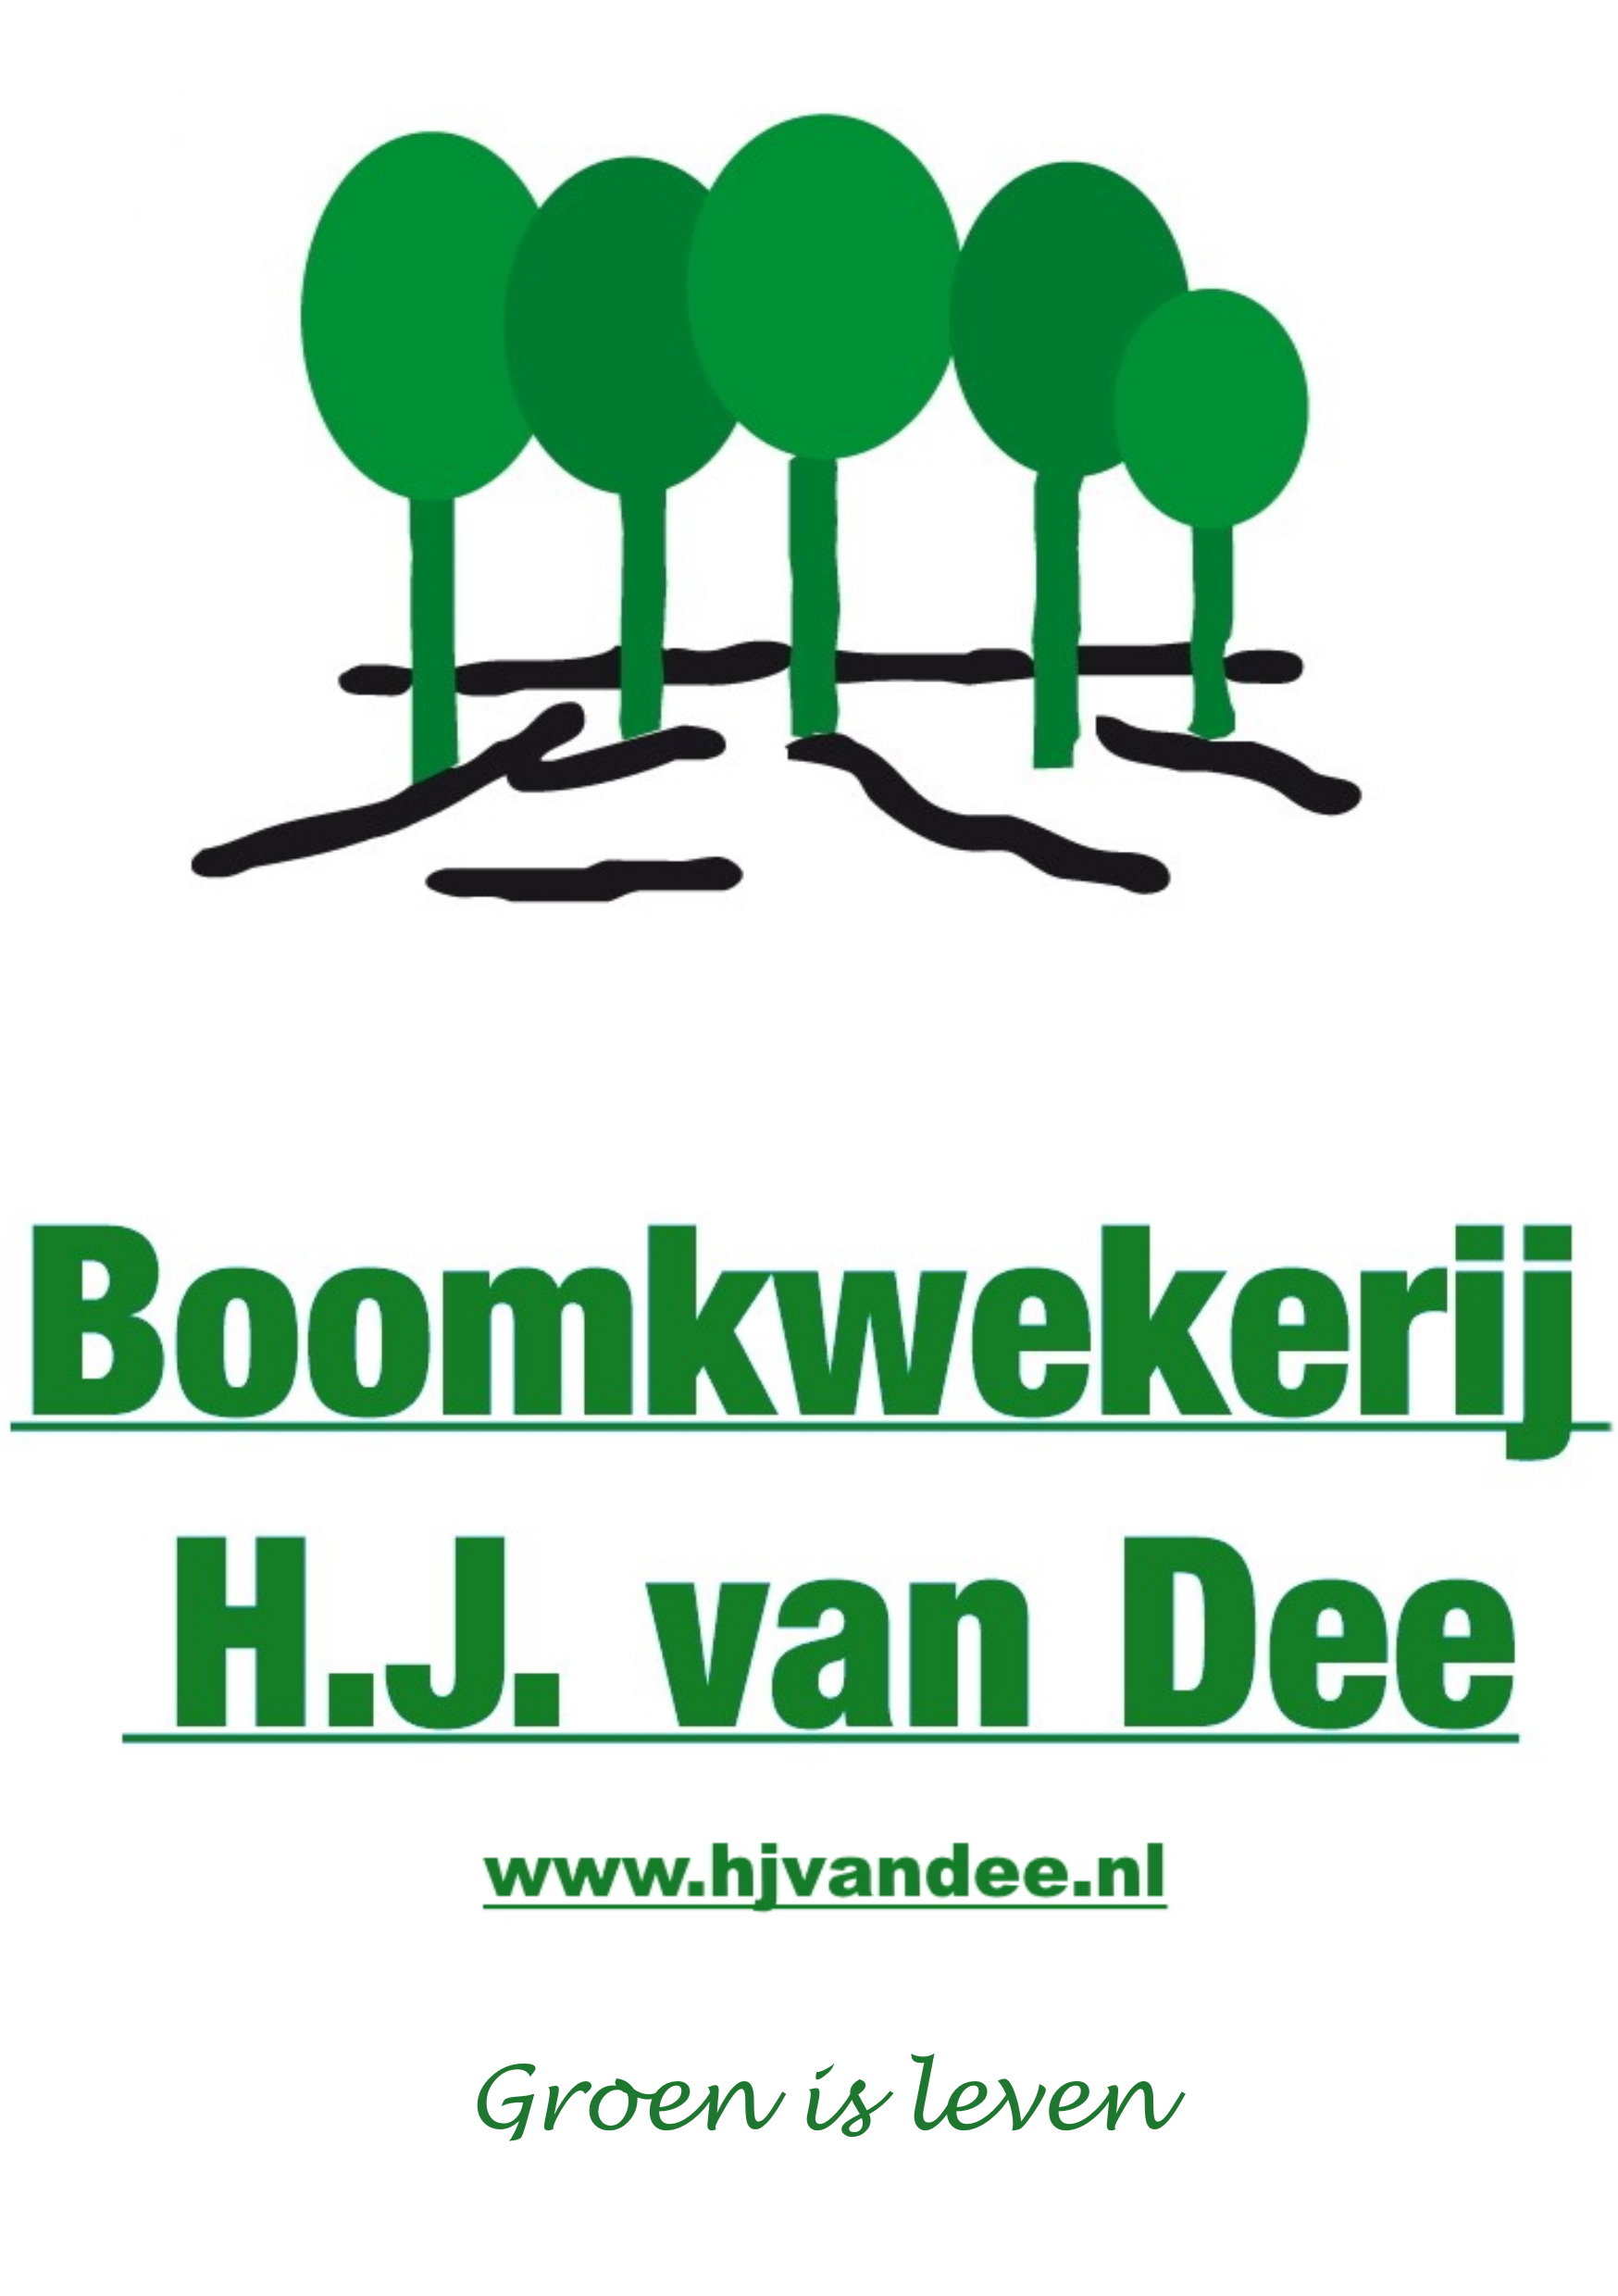 Boomkwekerij Van Dee